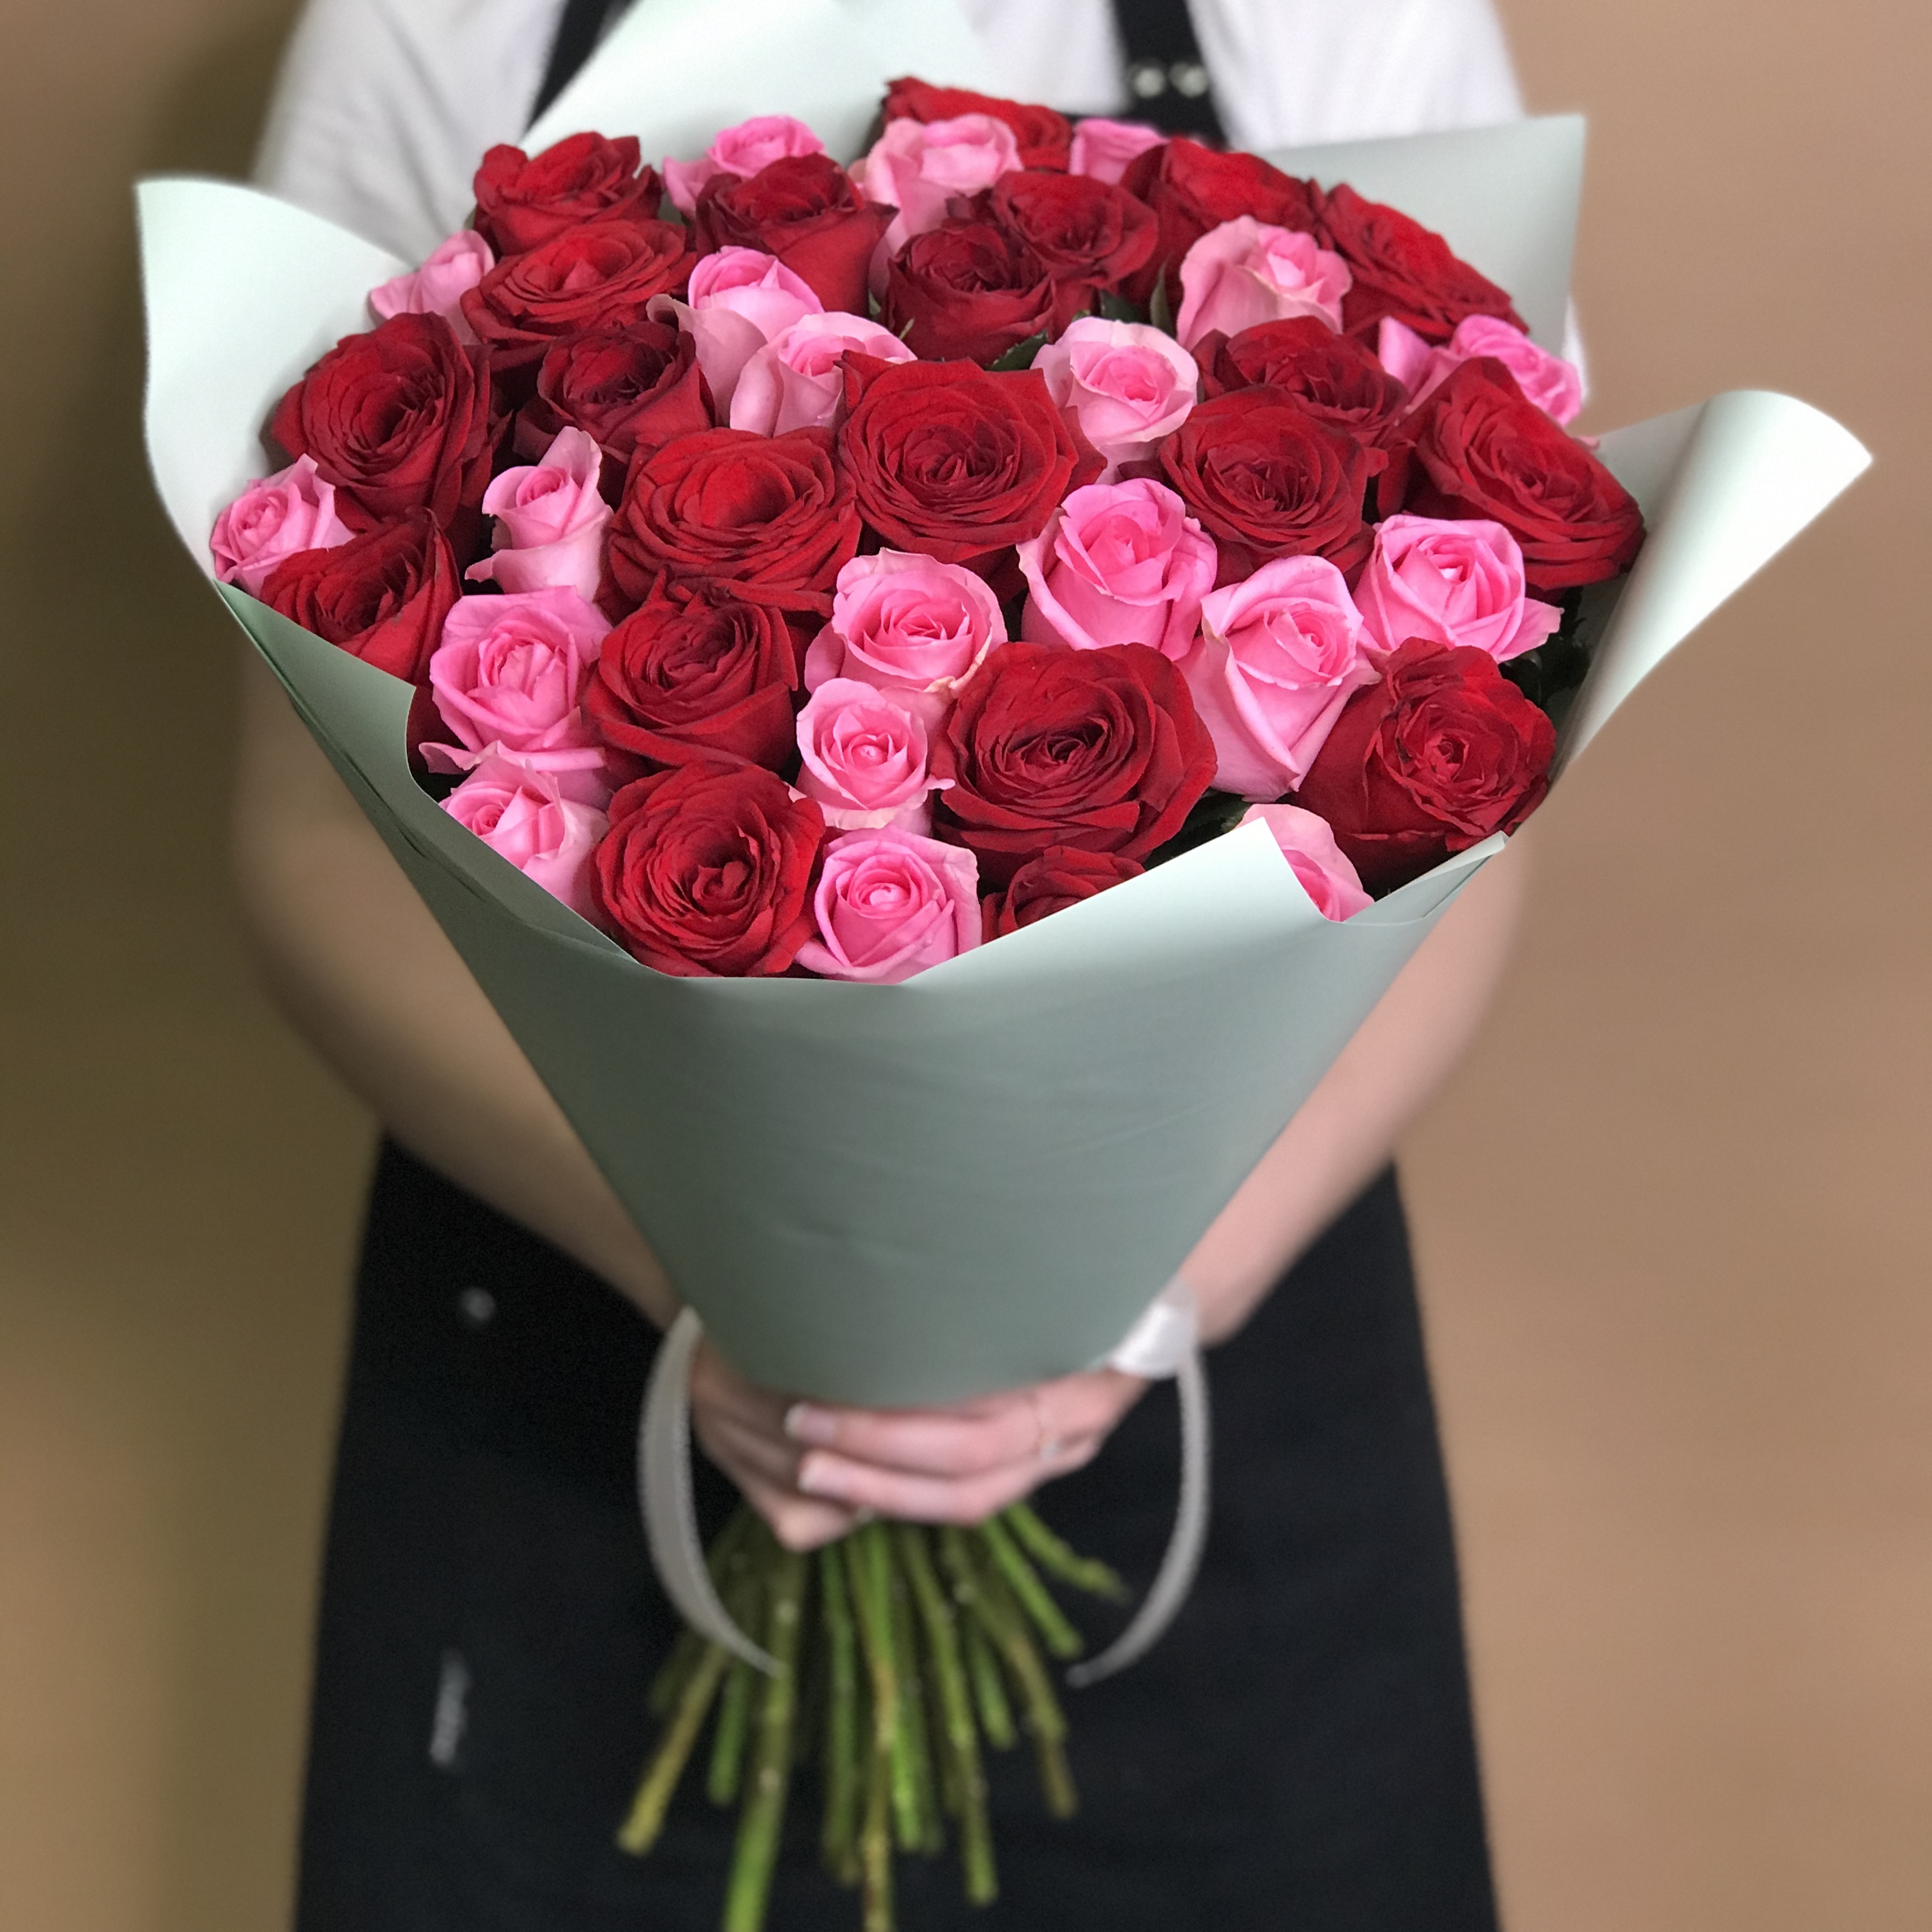 Букет из красных и розовых роз 41 шт. (70 см) букет из красных и розовых роз 41 шт 70 см